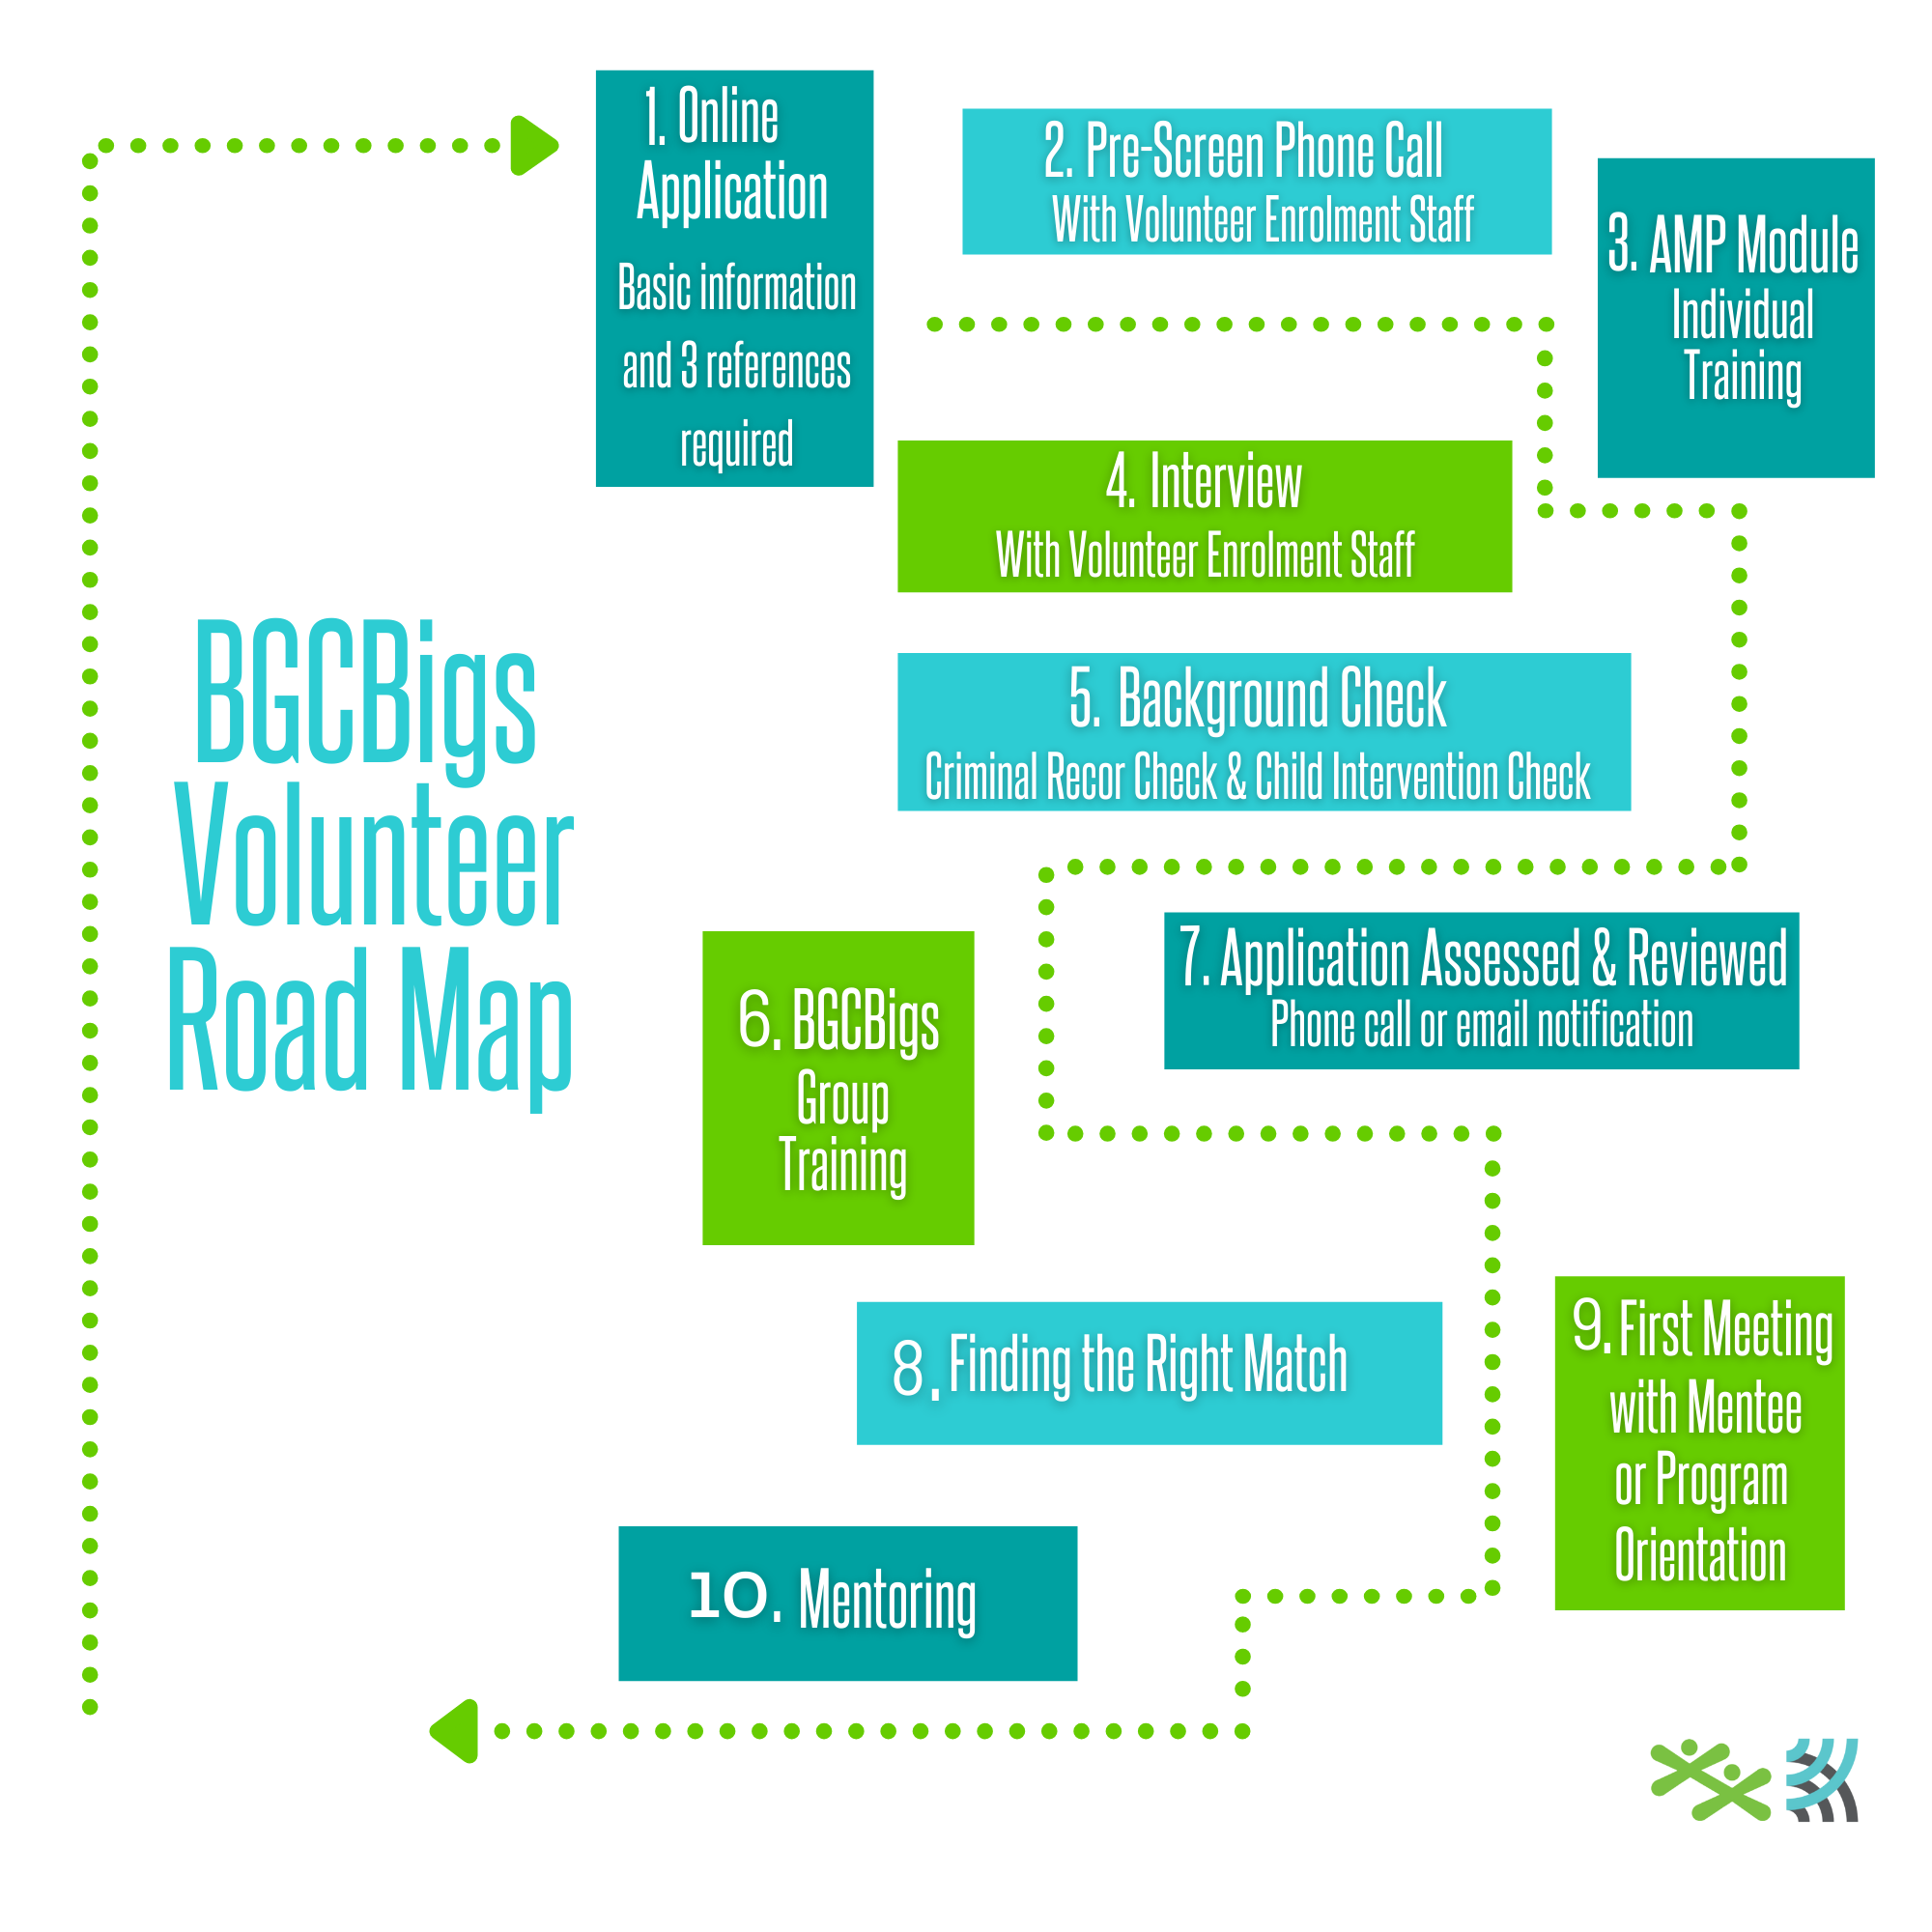 BGCBigs Edmonton and Area Volunteer Roadmap - The Steps to Volunteer